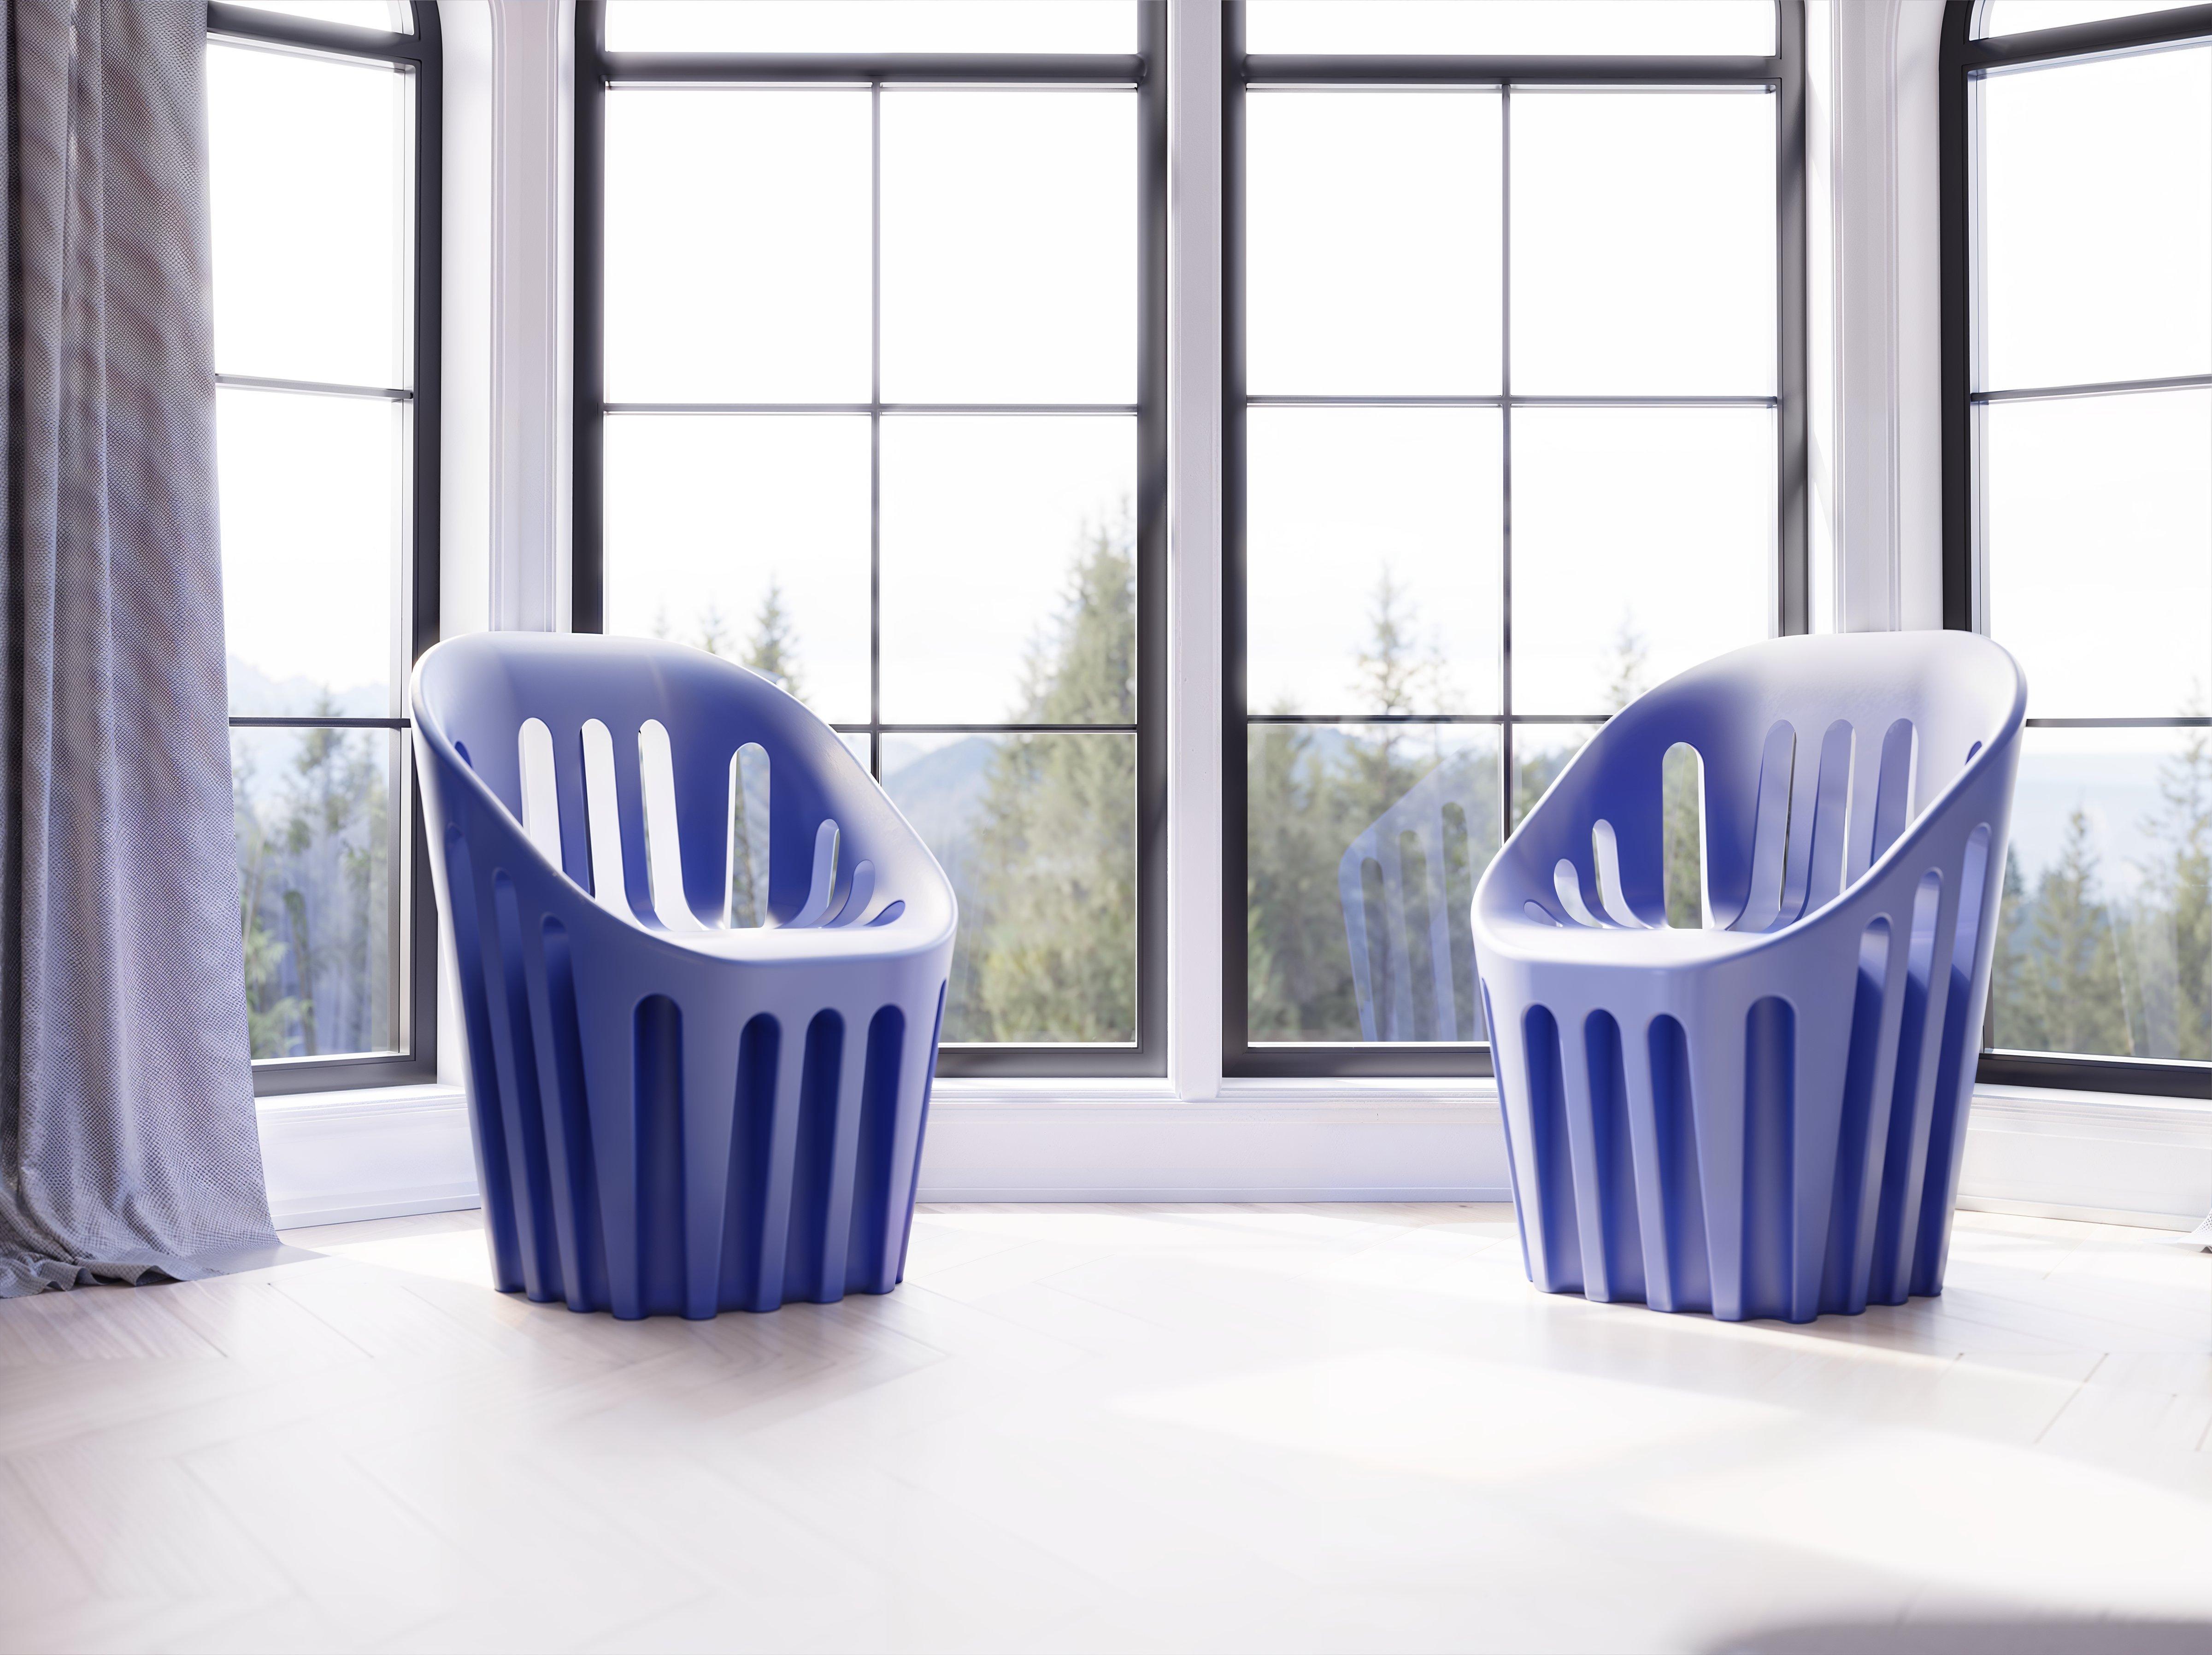 Pulverblauer Coliseum-Stuhl von Alvaro Uribe
Abmessungen: T 65 x B 66 x H 86 cm. Sitzhöhe: 45 cm.
MATERIALEN: Polyethylen.
Gewicht: 11 kg.

Erhältlich in verschiedenen Farbvarianten. Dieses Produkt ist für die Verwendung im Innen- und Außenbereich